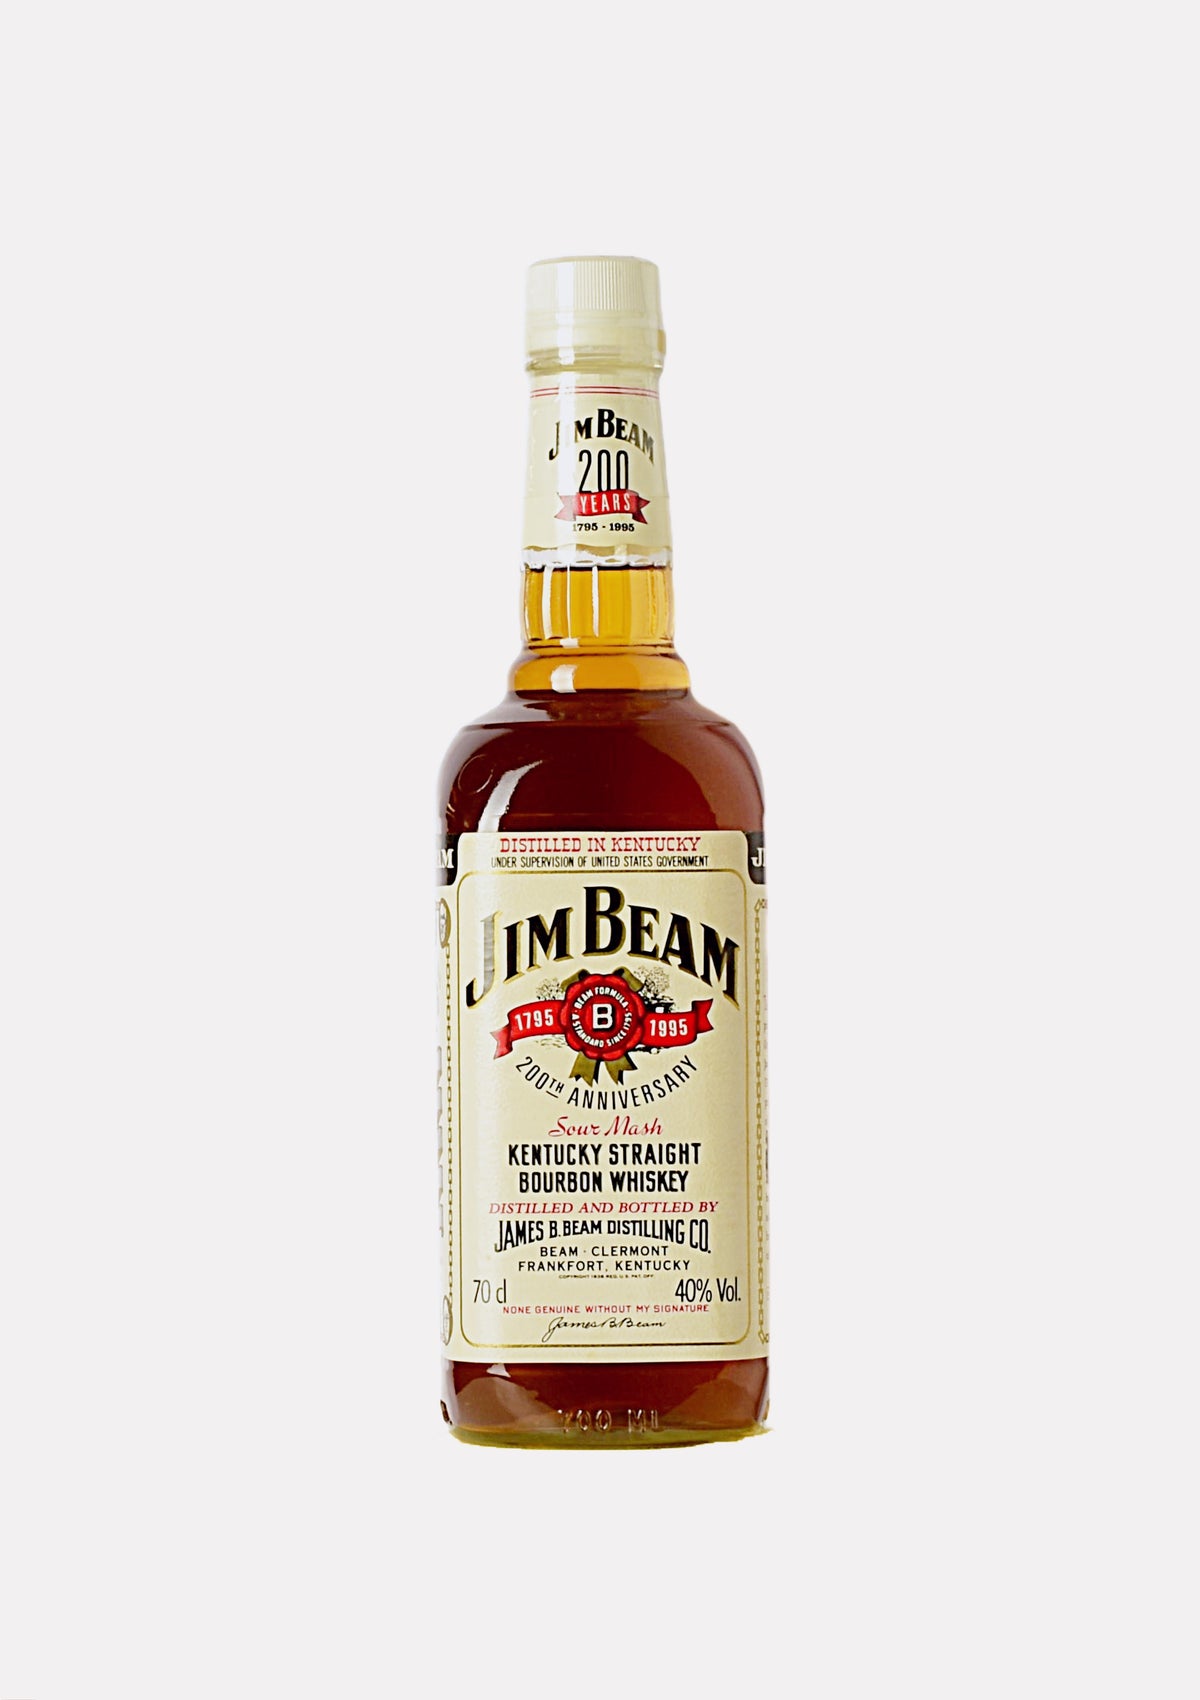 Jim Beam 200th Anniversary Kentucky Straight Bourbon Whiskey